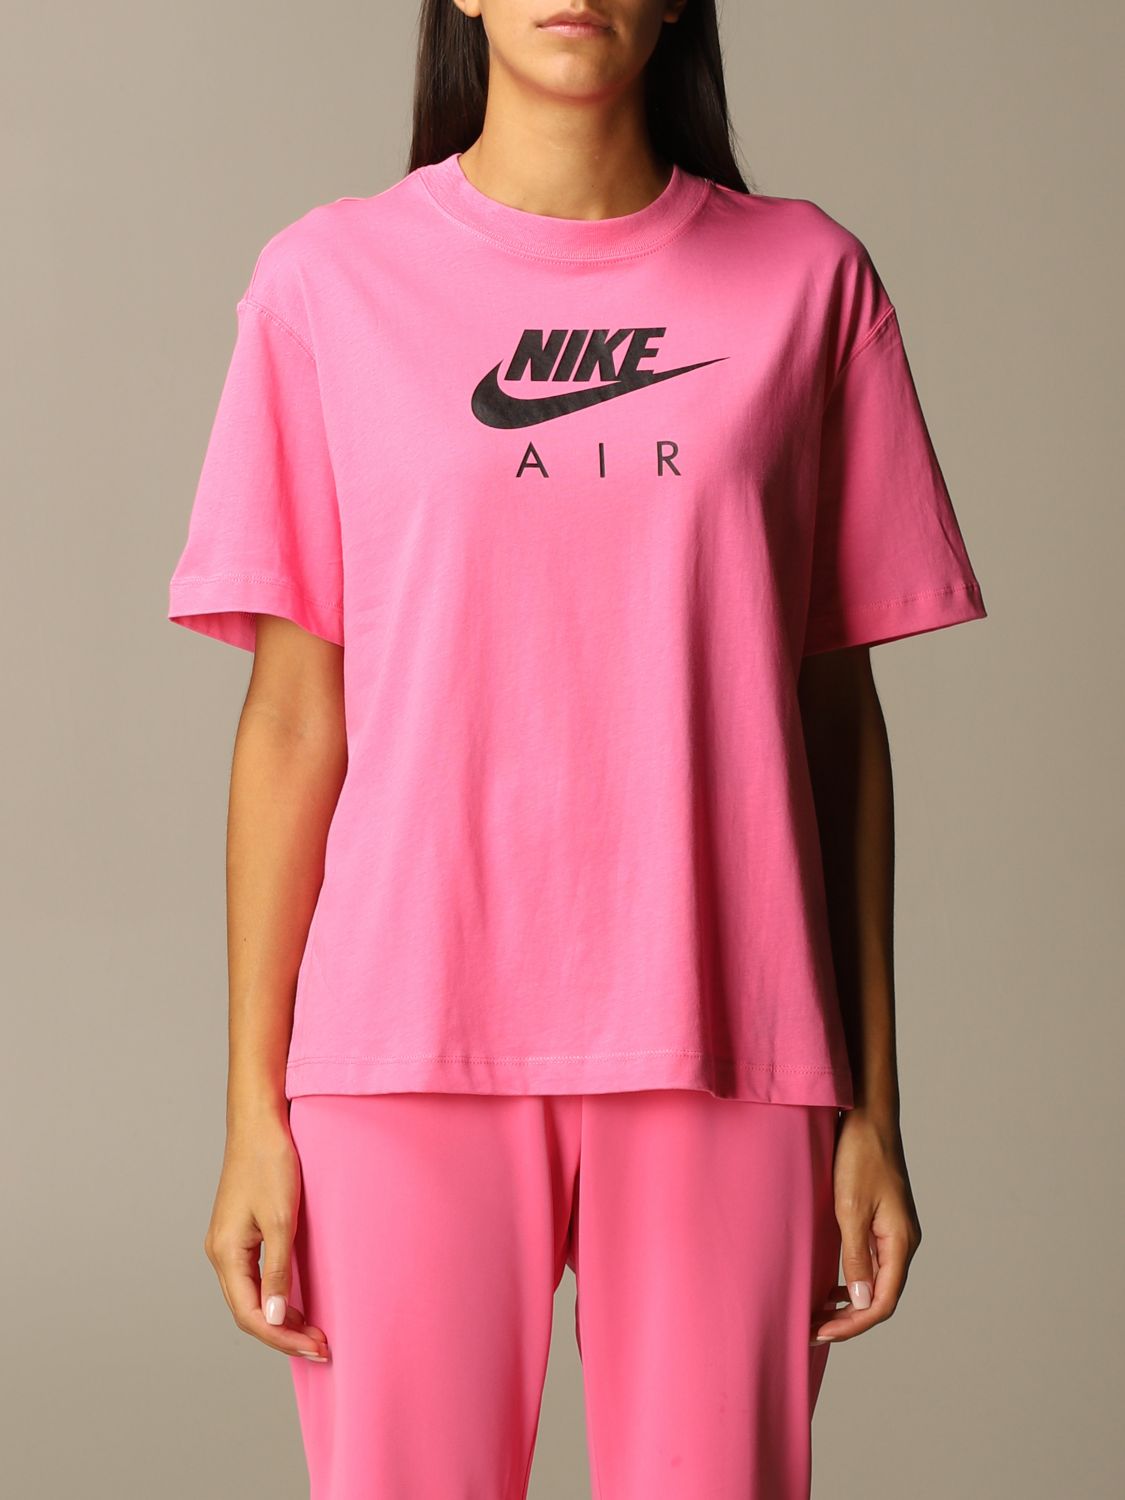 pink t shirt nike